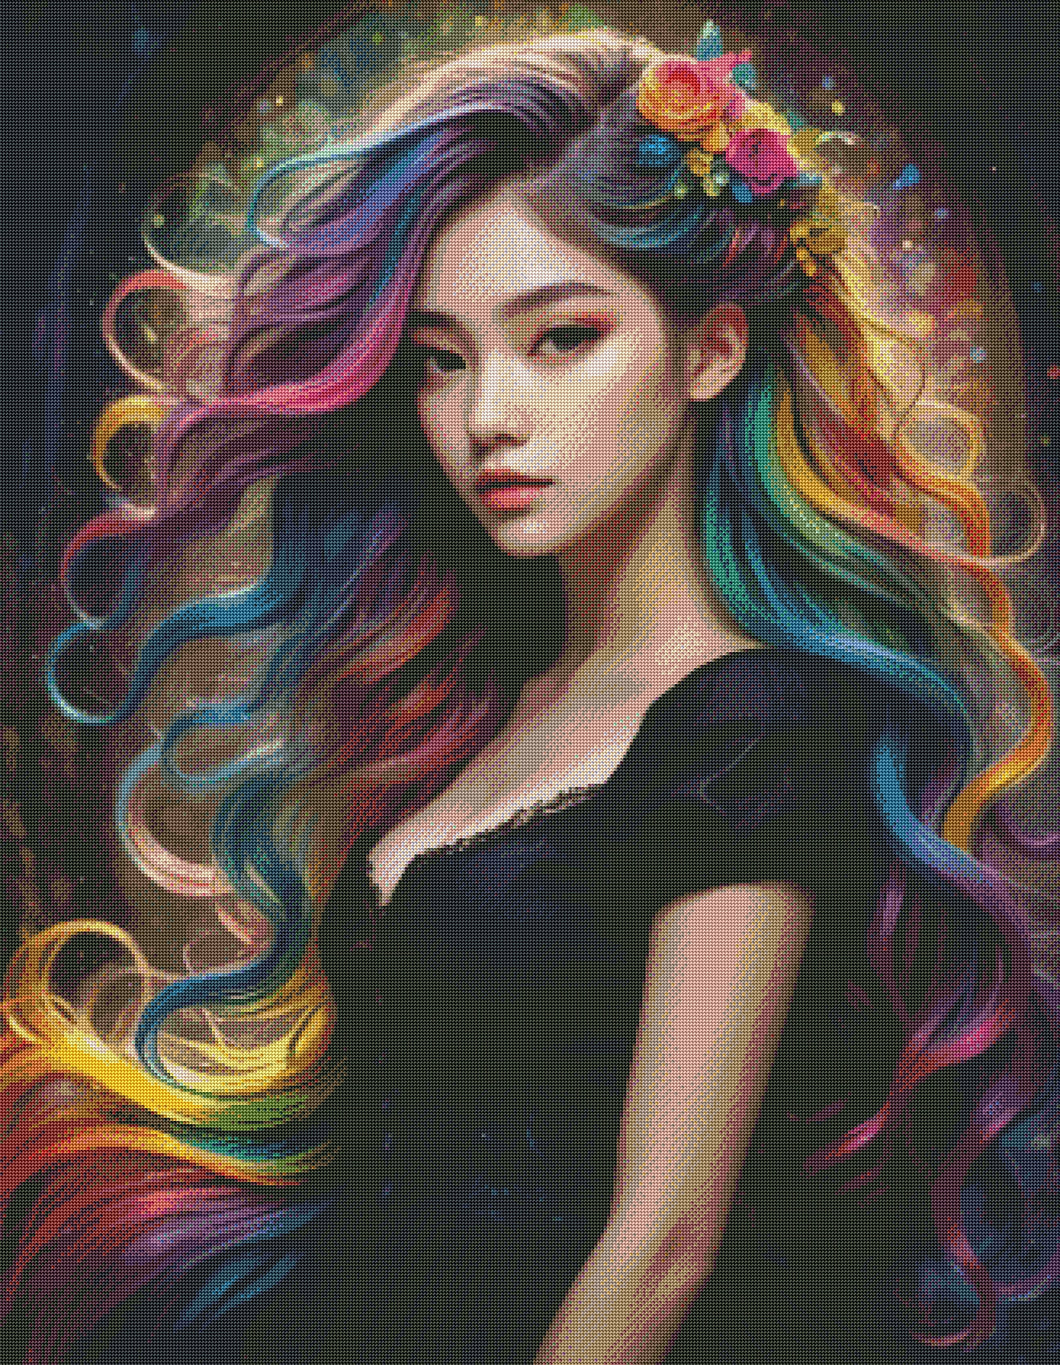 The girl with the rainbow hair